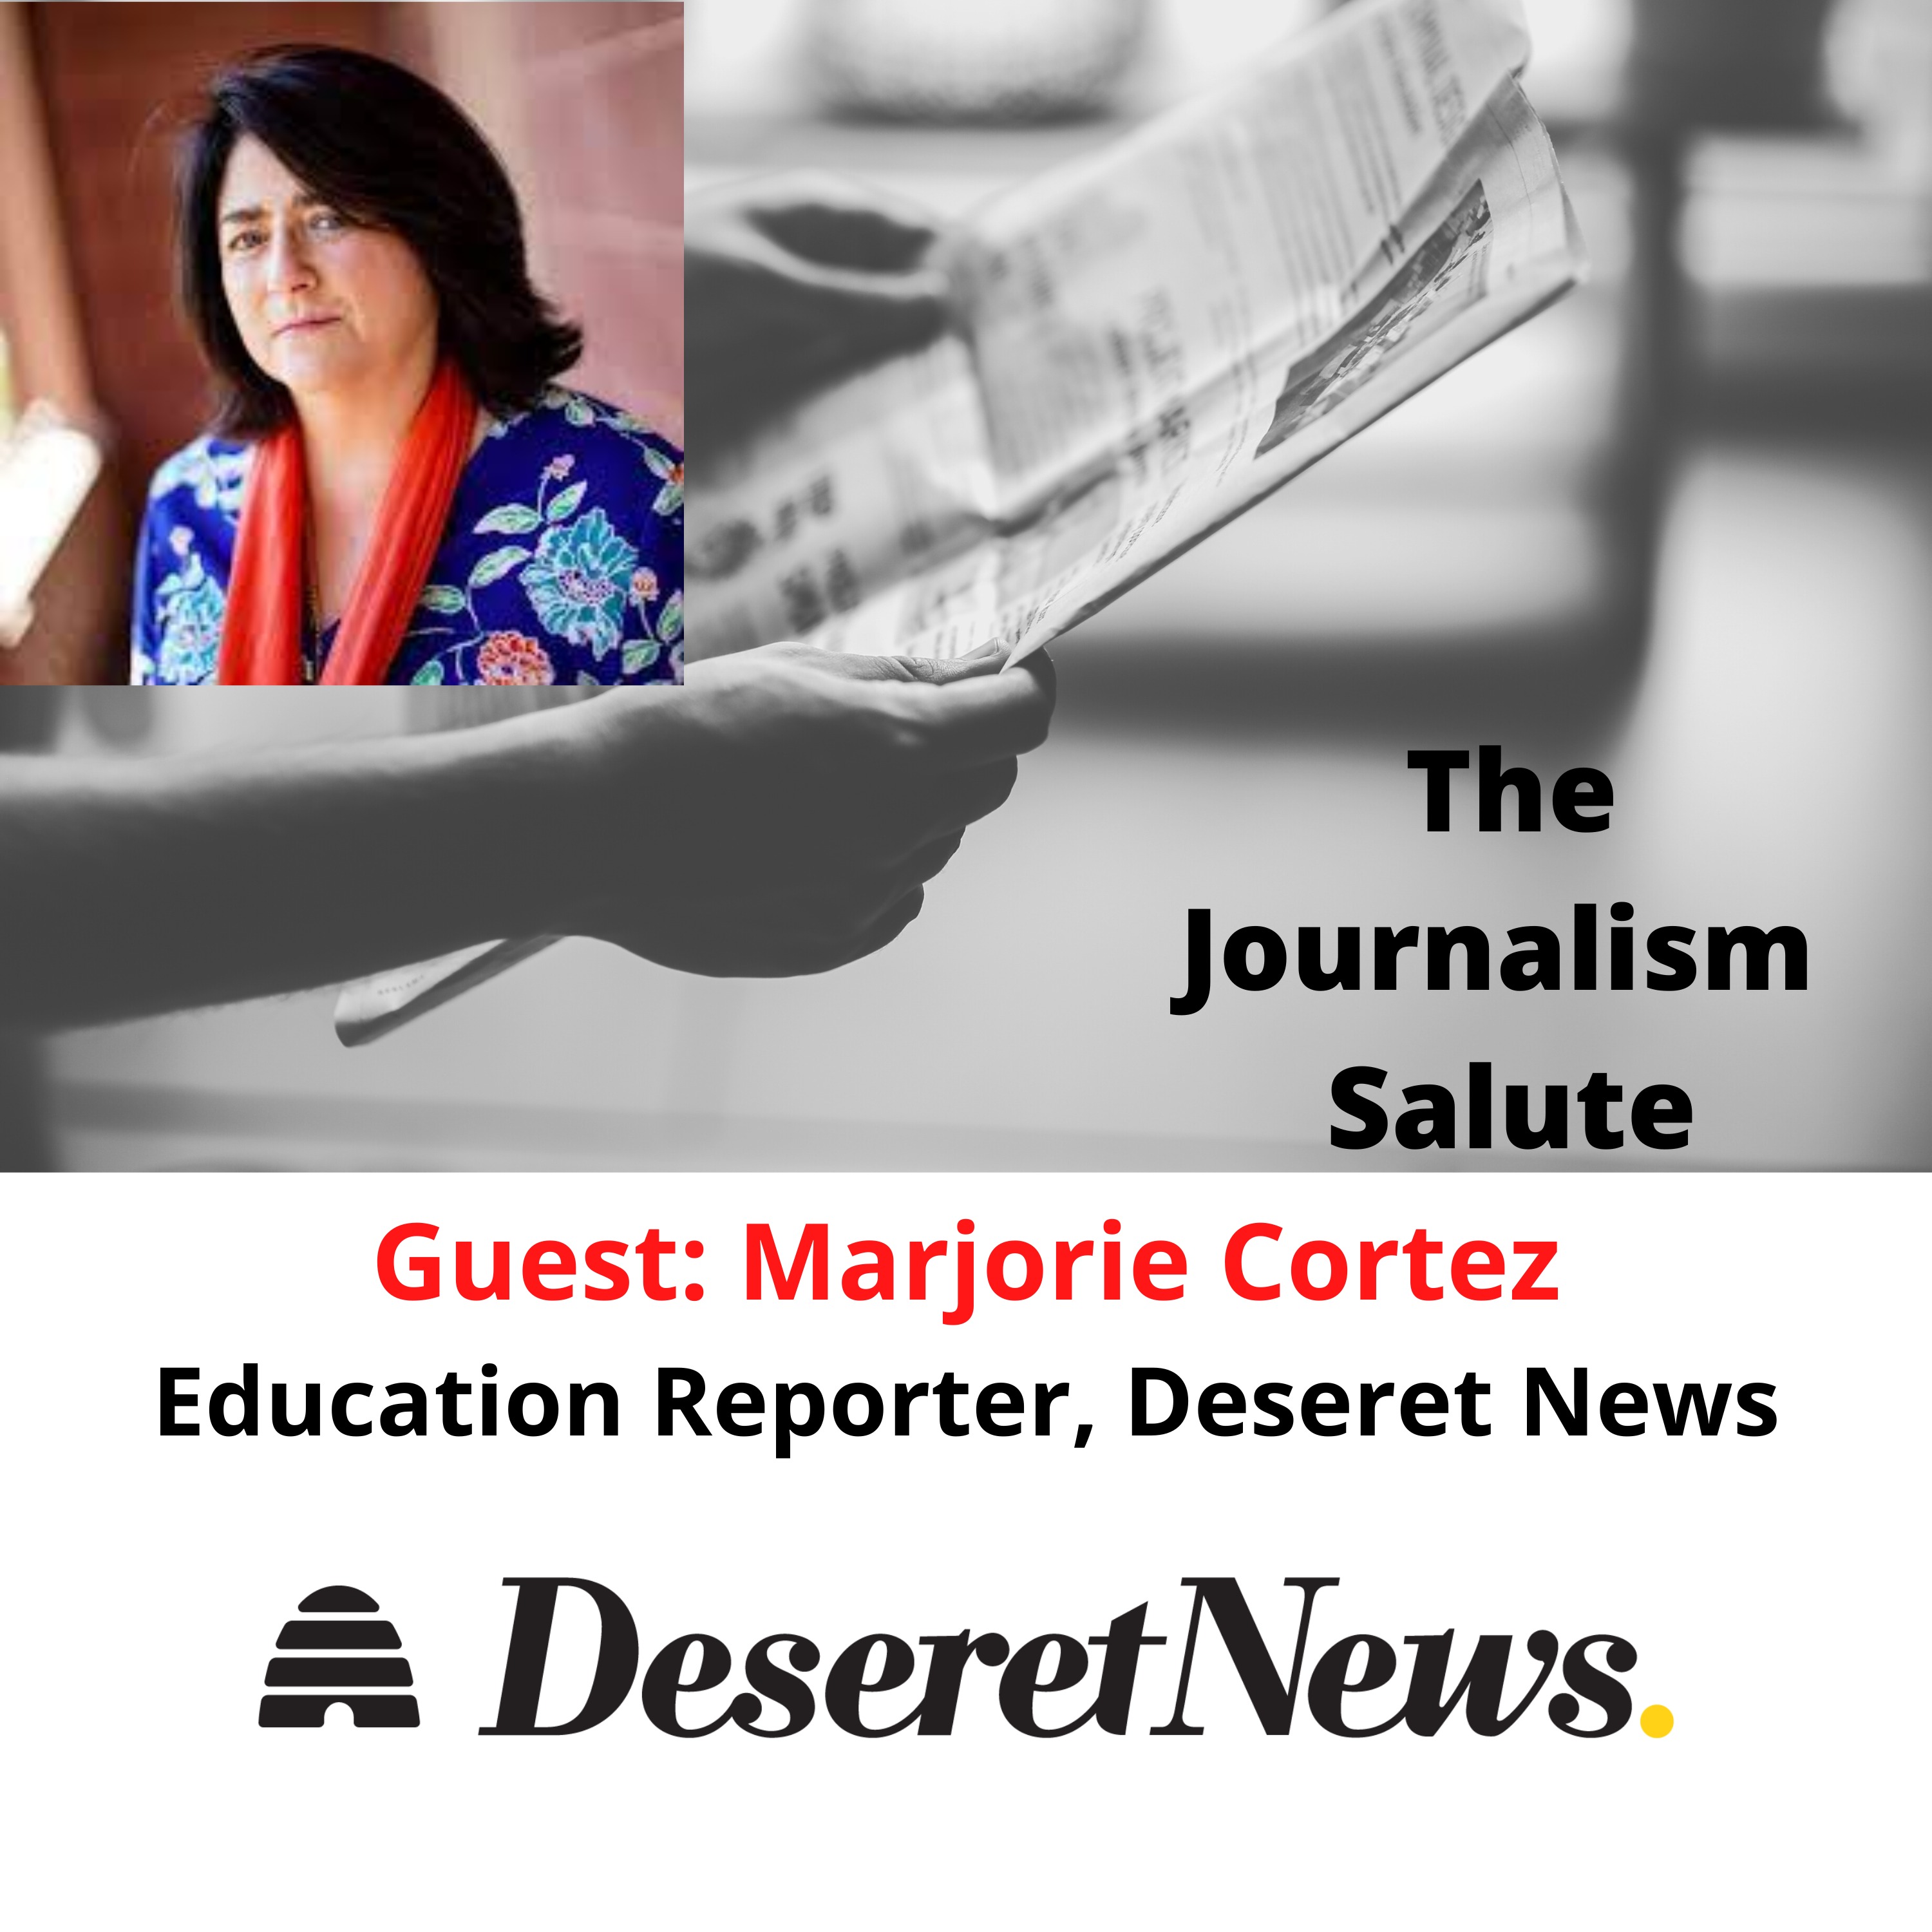 Marjorie Cortez, Education Reporter: Deseret News